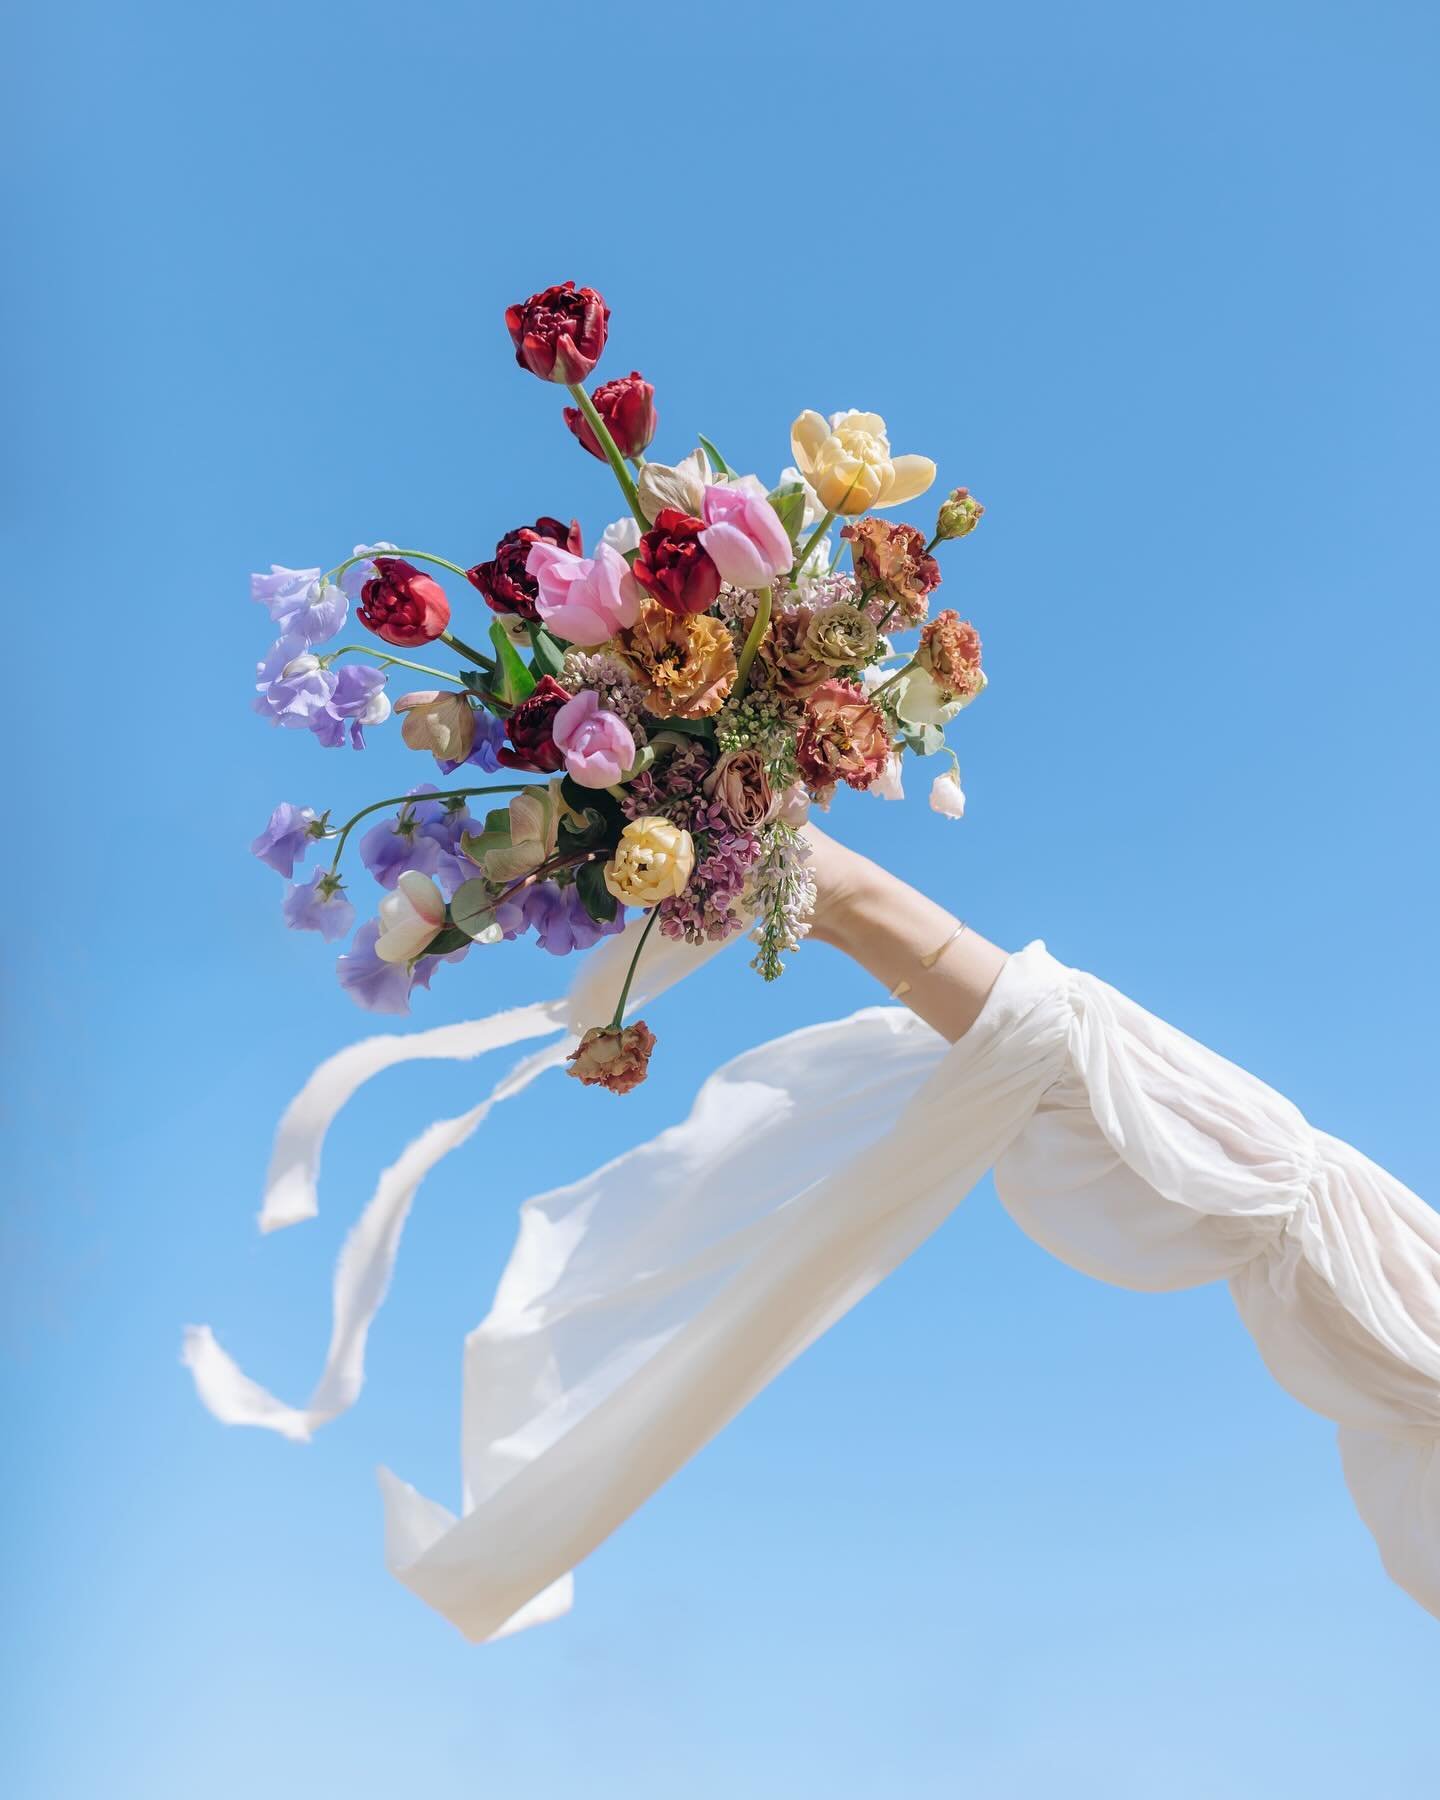 Bouquet, meet blue sky. Blue sky, meet bouquet. 🤝

#matchmadeinheaven 

Photo: @smmgphotography 
Dress: @rawgoldenrentals